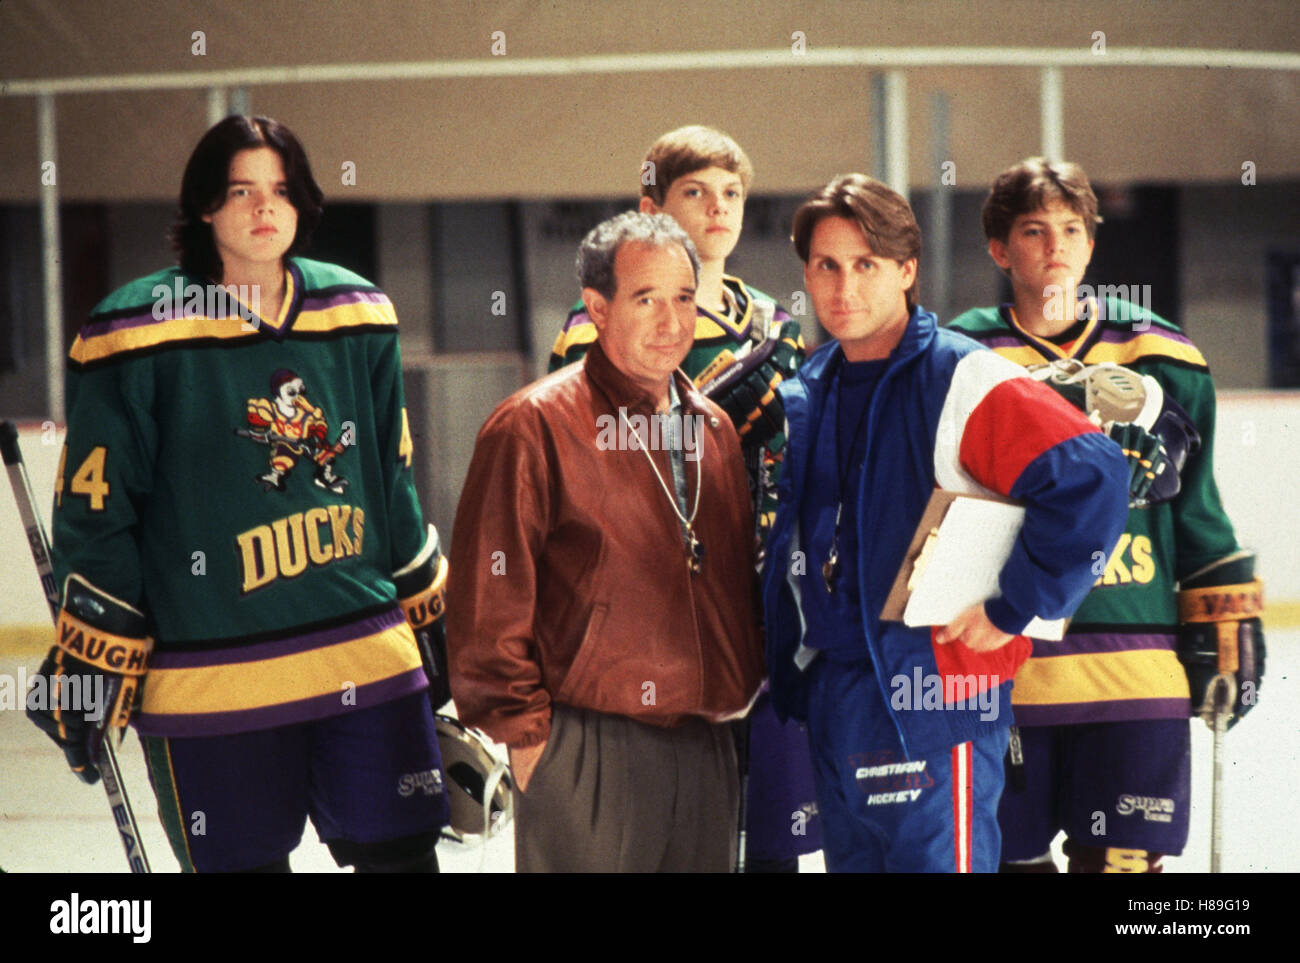 Mighty Ducks II - Das Superteam kehrt zurück, (D2 - il Mighty Ducks) USA 1994, Regie: Sam Weisman, MICHAEL TUCKER (2.vl), Emilio Estevez (2.vr), Stichwort: Eishockey, Spieler Foto Stock